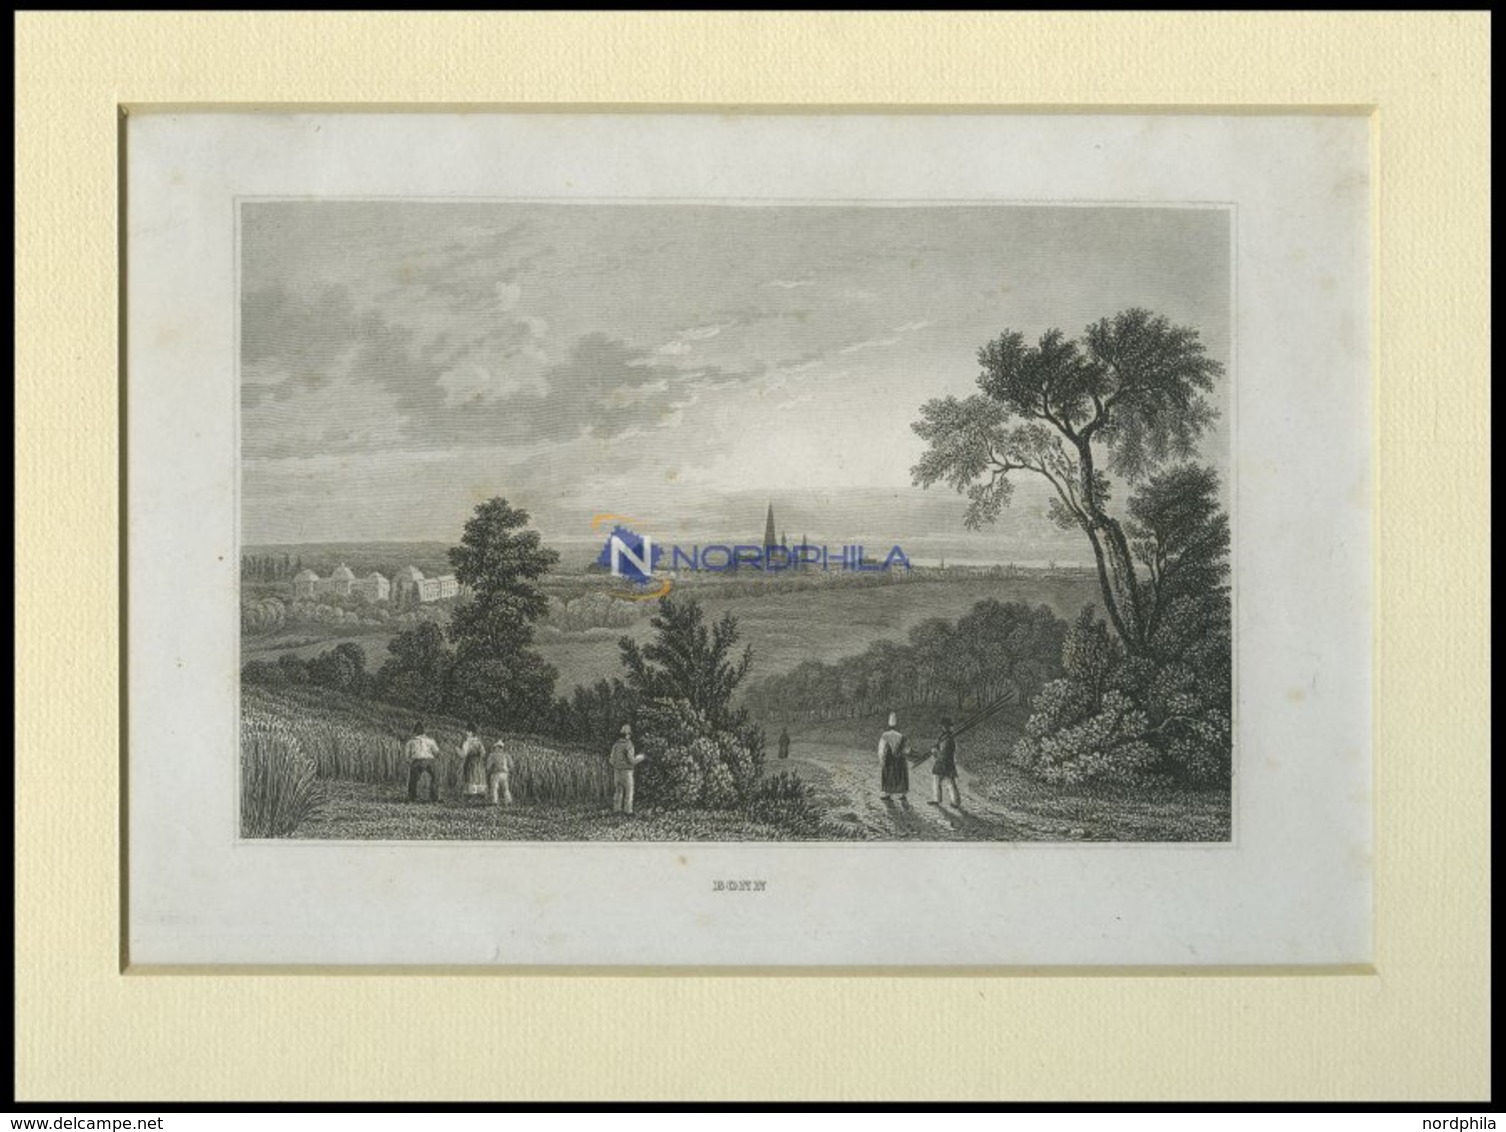 BONN, Ansicht Aus Der Ferne, Stahlstich Von B.I. Um 1840 - Litografía